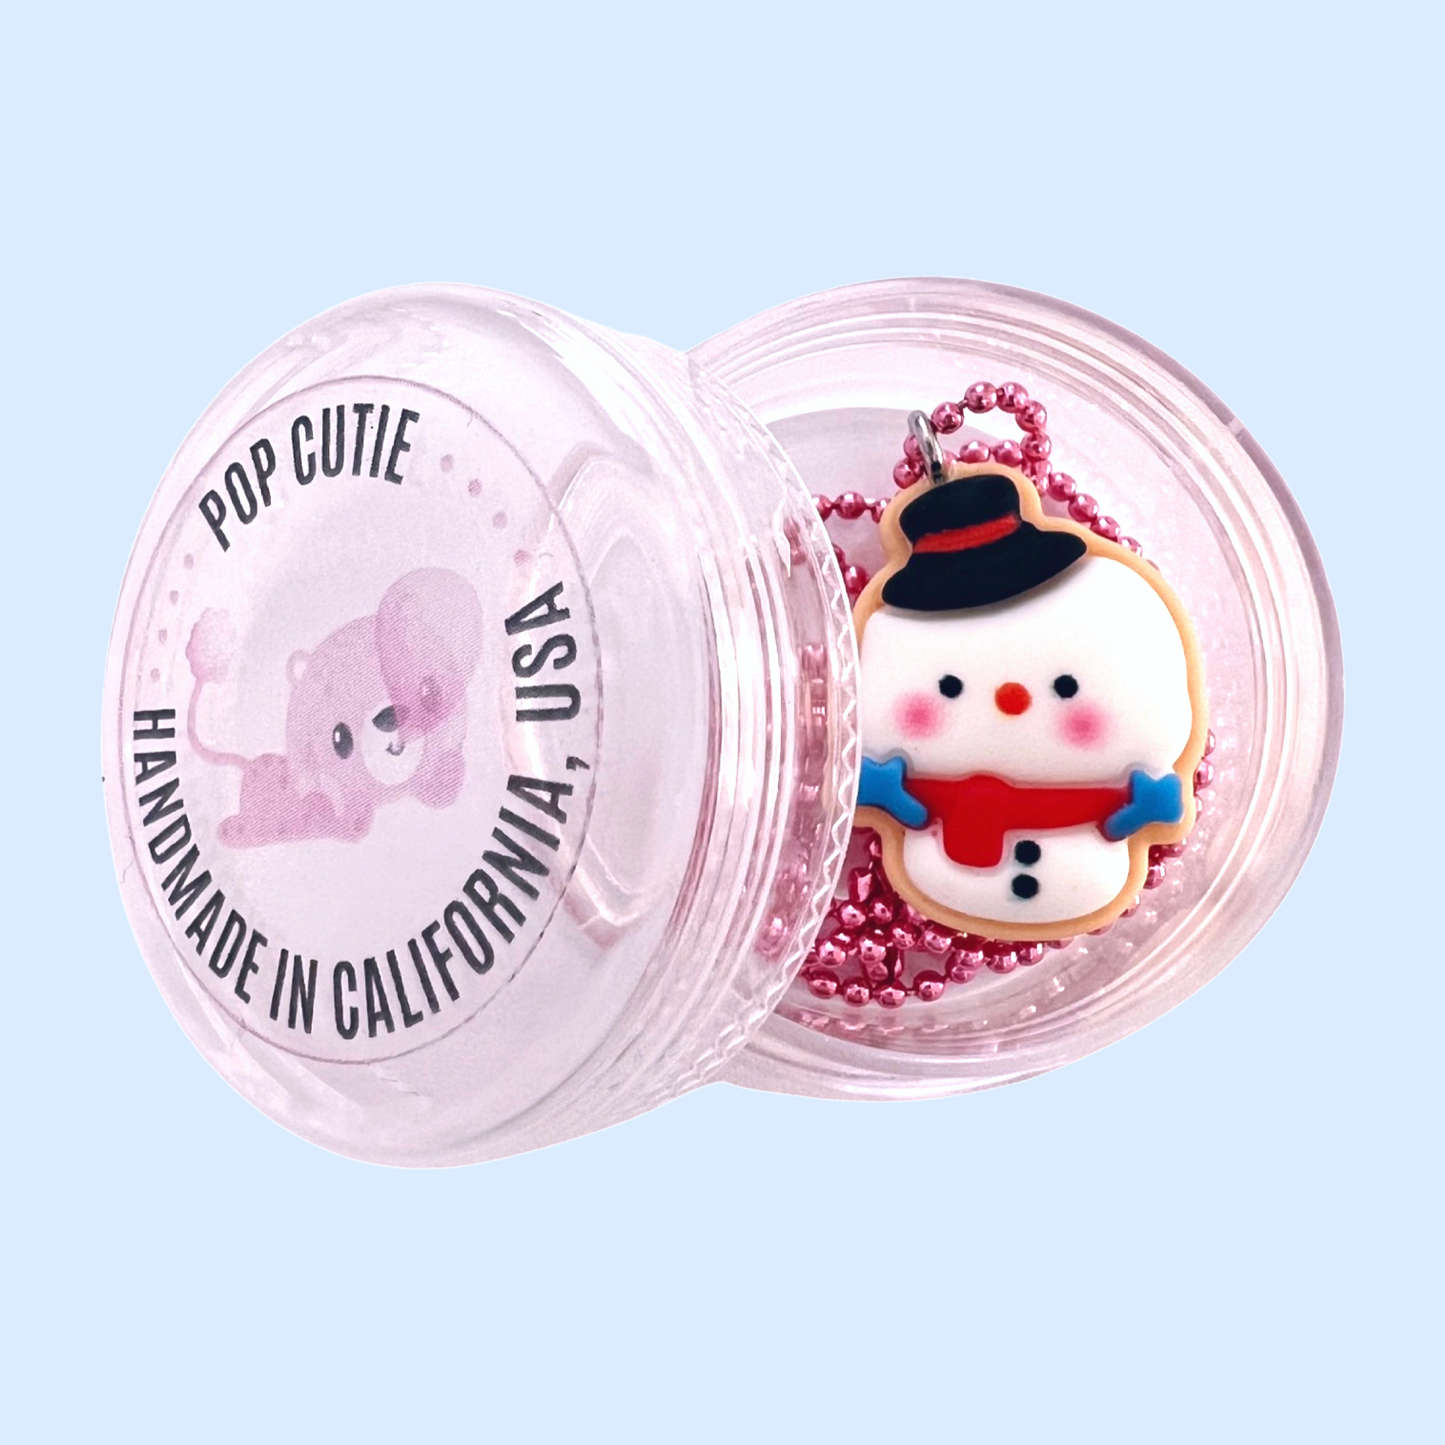 Pop Cutie Snowman Cookie Kids Christmas Necklace